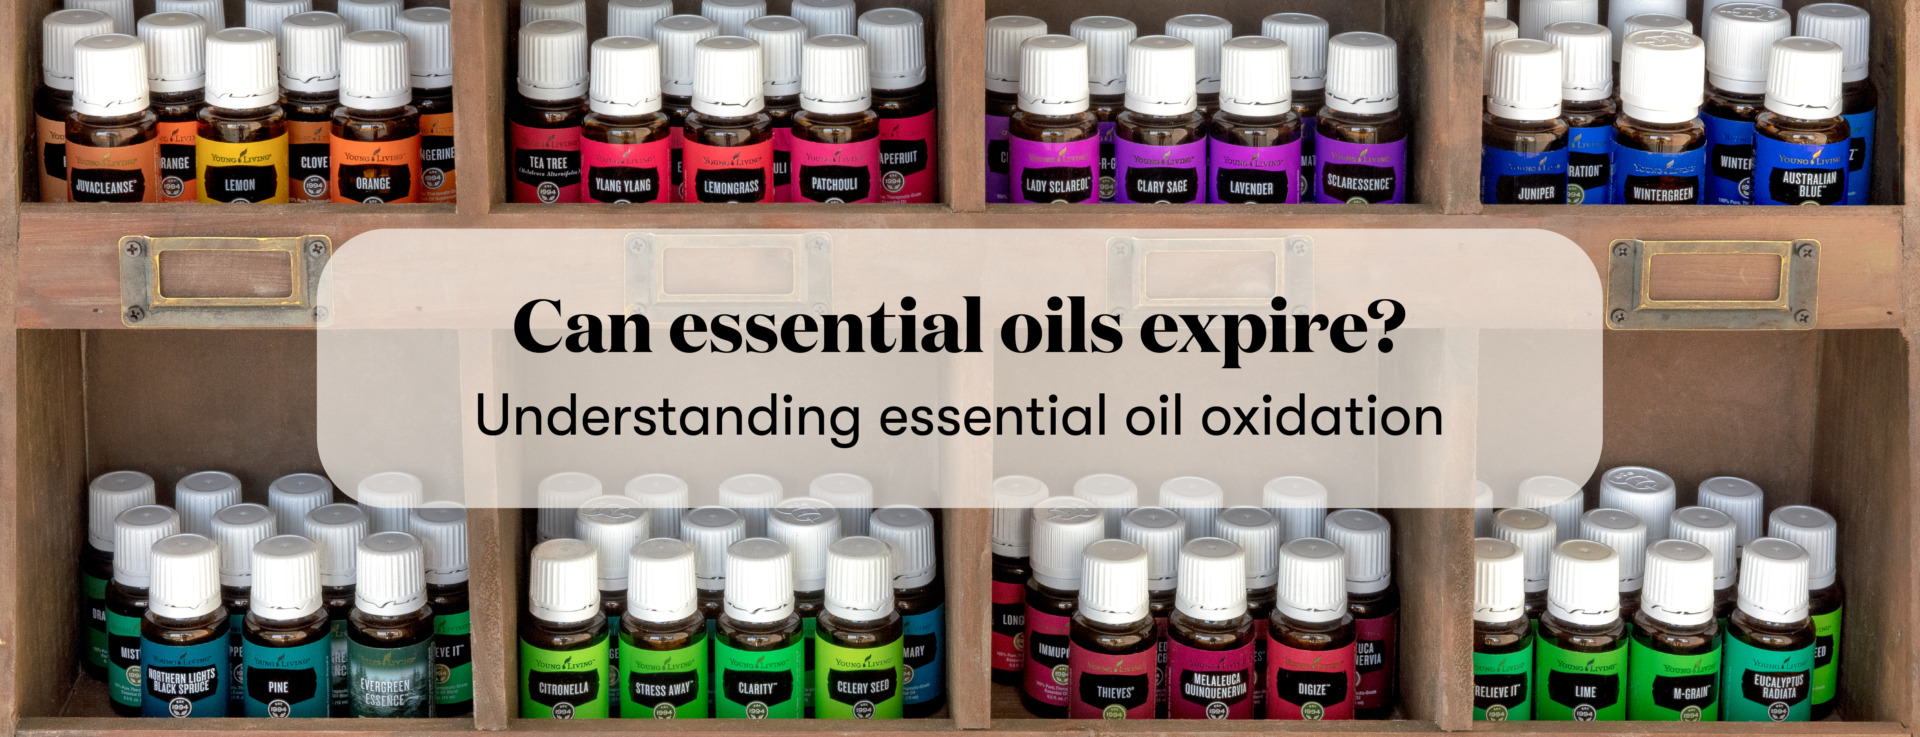 Do Essential Oils Expire? Oxidation & Essential Oils